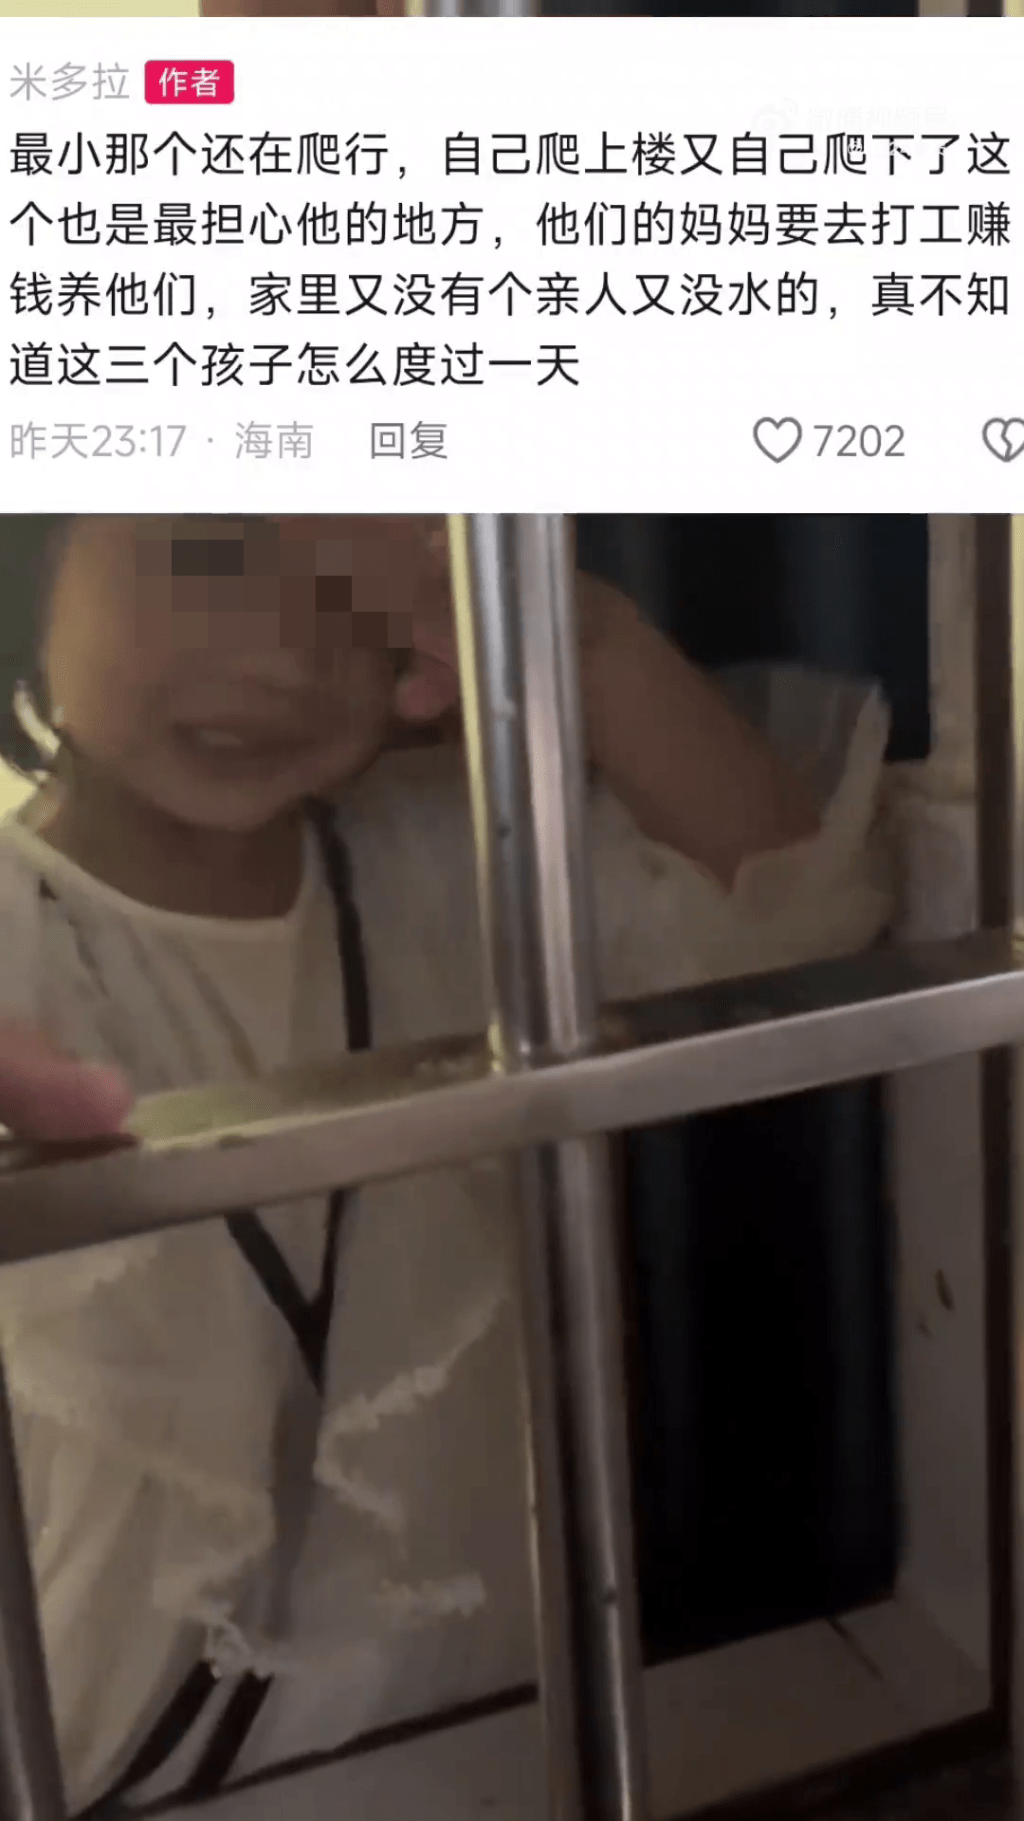 内地网传“海南3个小孩被锁家里、一天只吃一餐饭、家中地上全是排泄物”的相关影片。